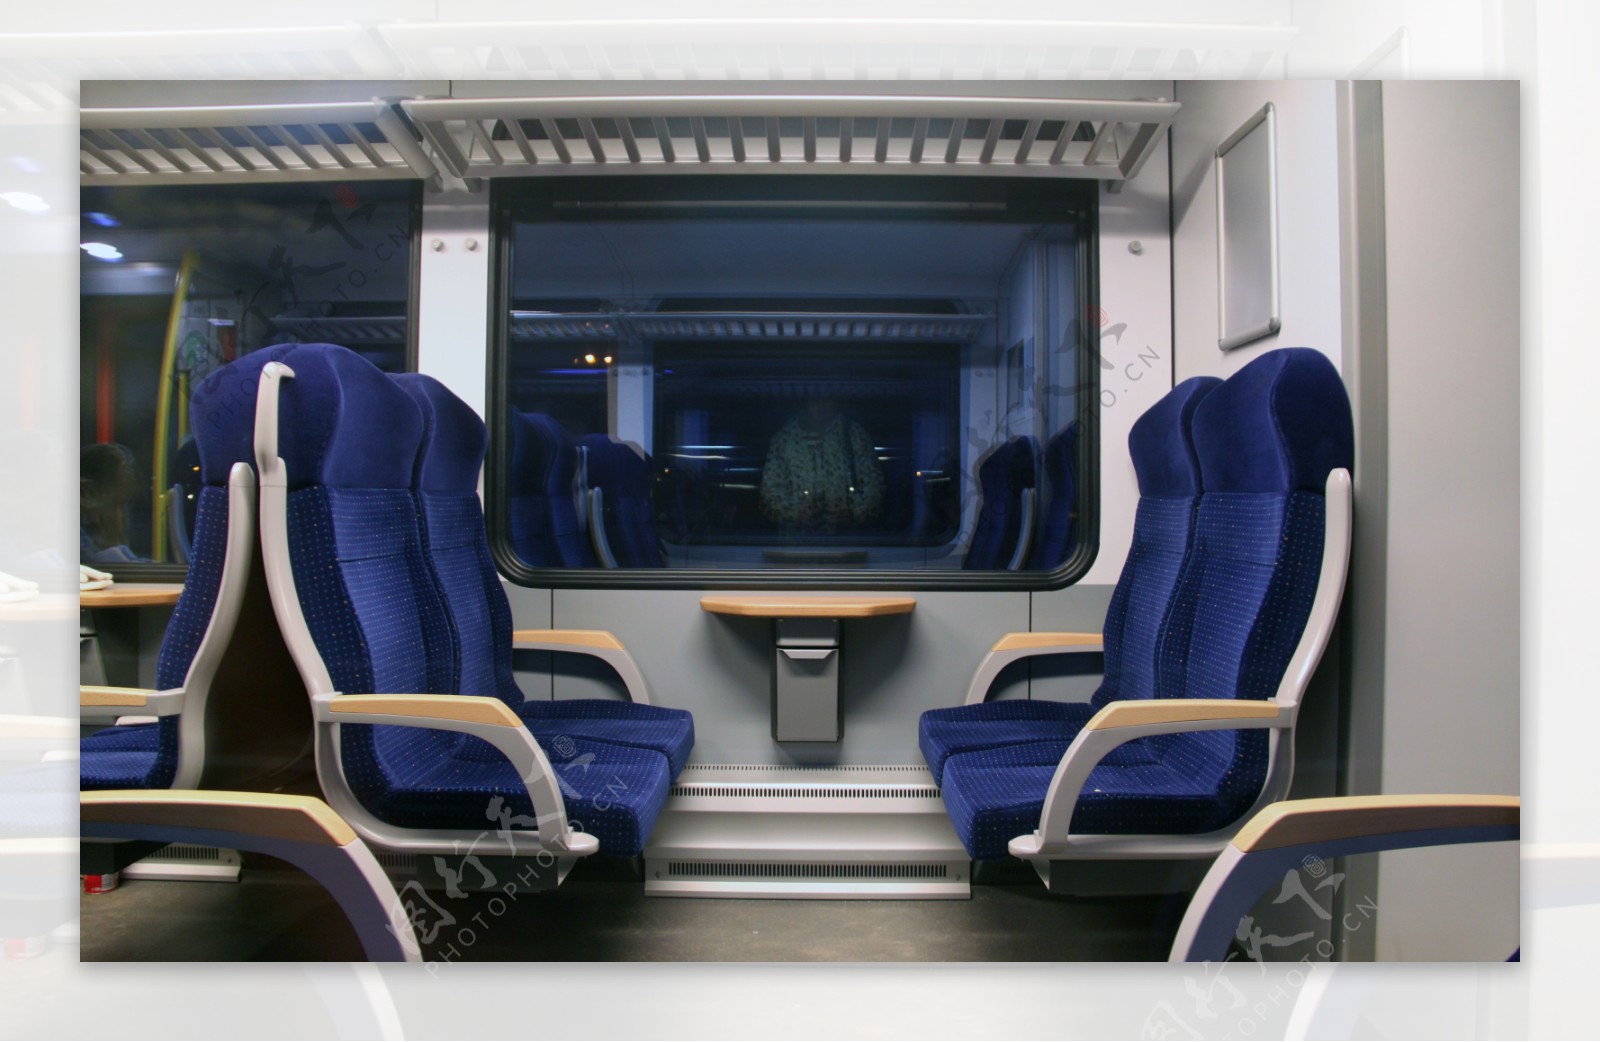 火车硬座、高铁动车、国内经济舱 座位分布表_硬座006号在哪个位置-CSDN博客